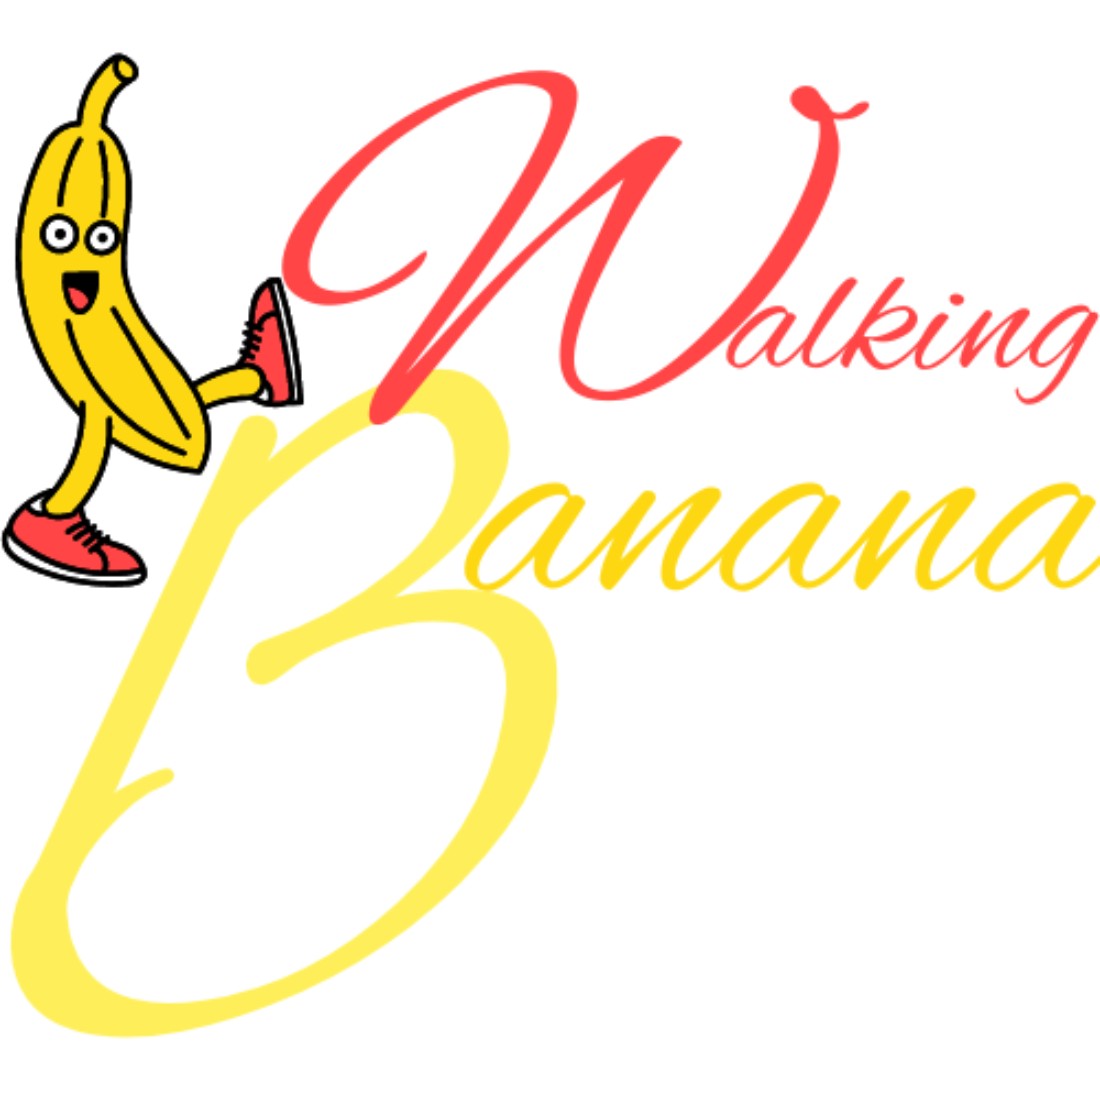 banana logo designs